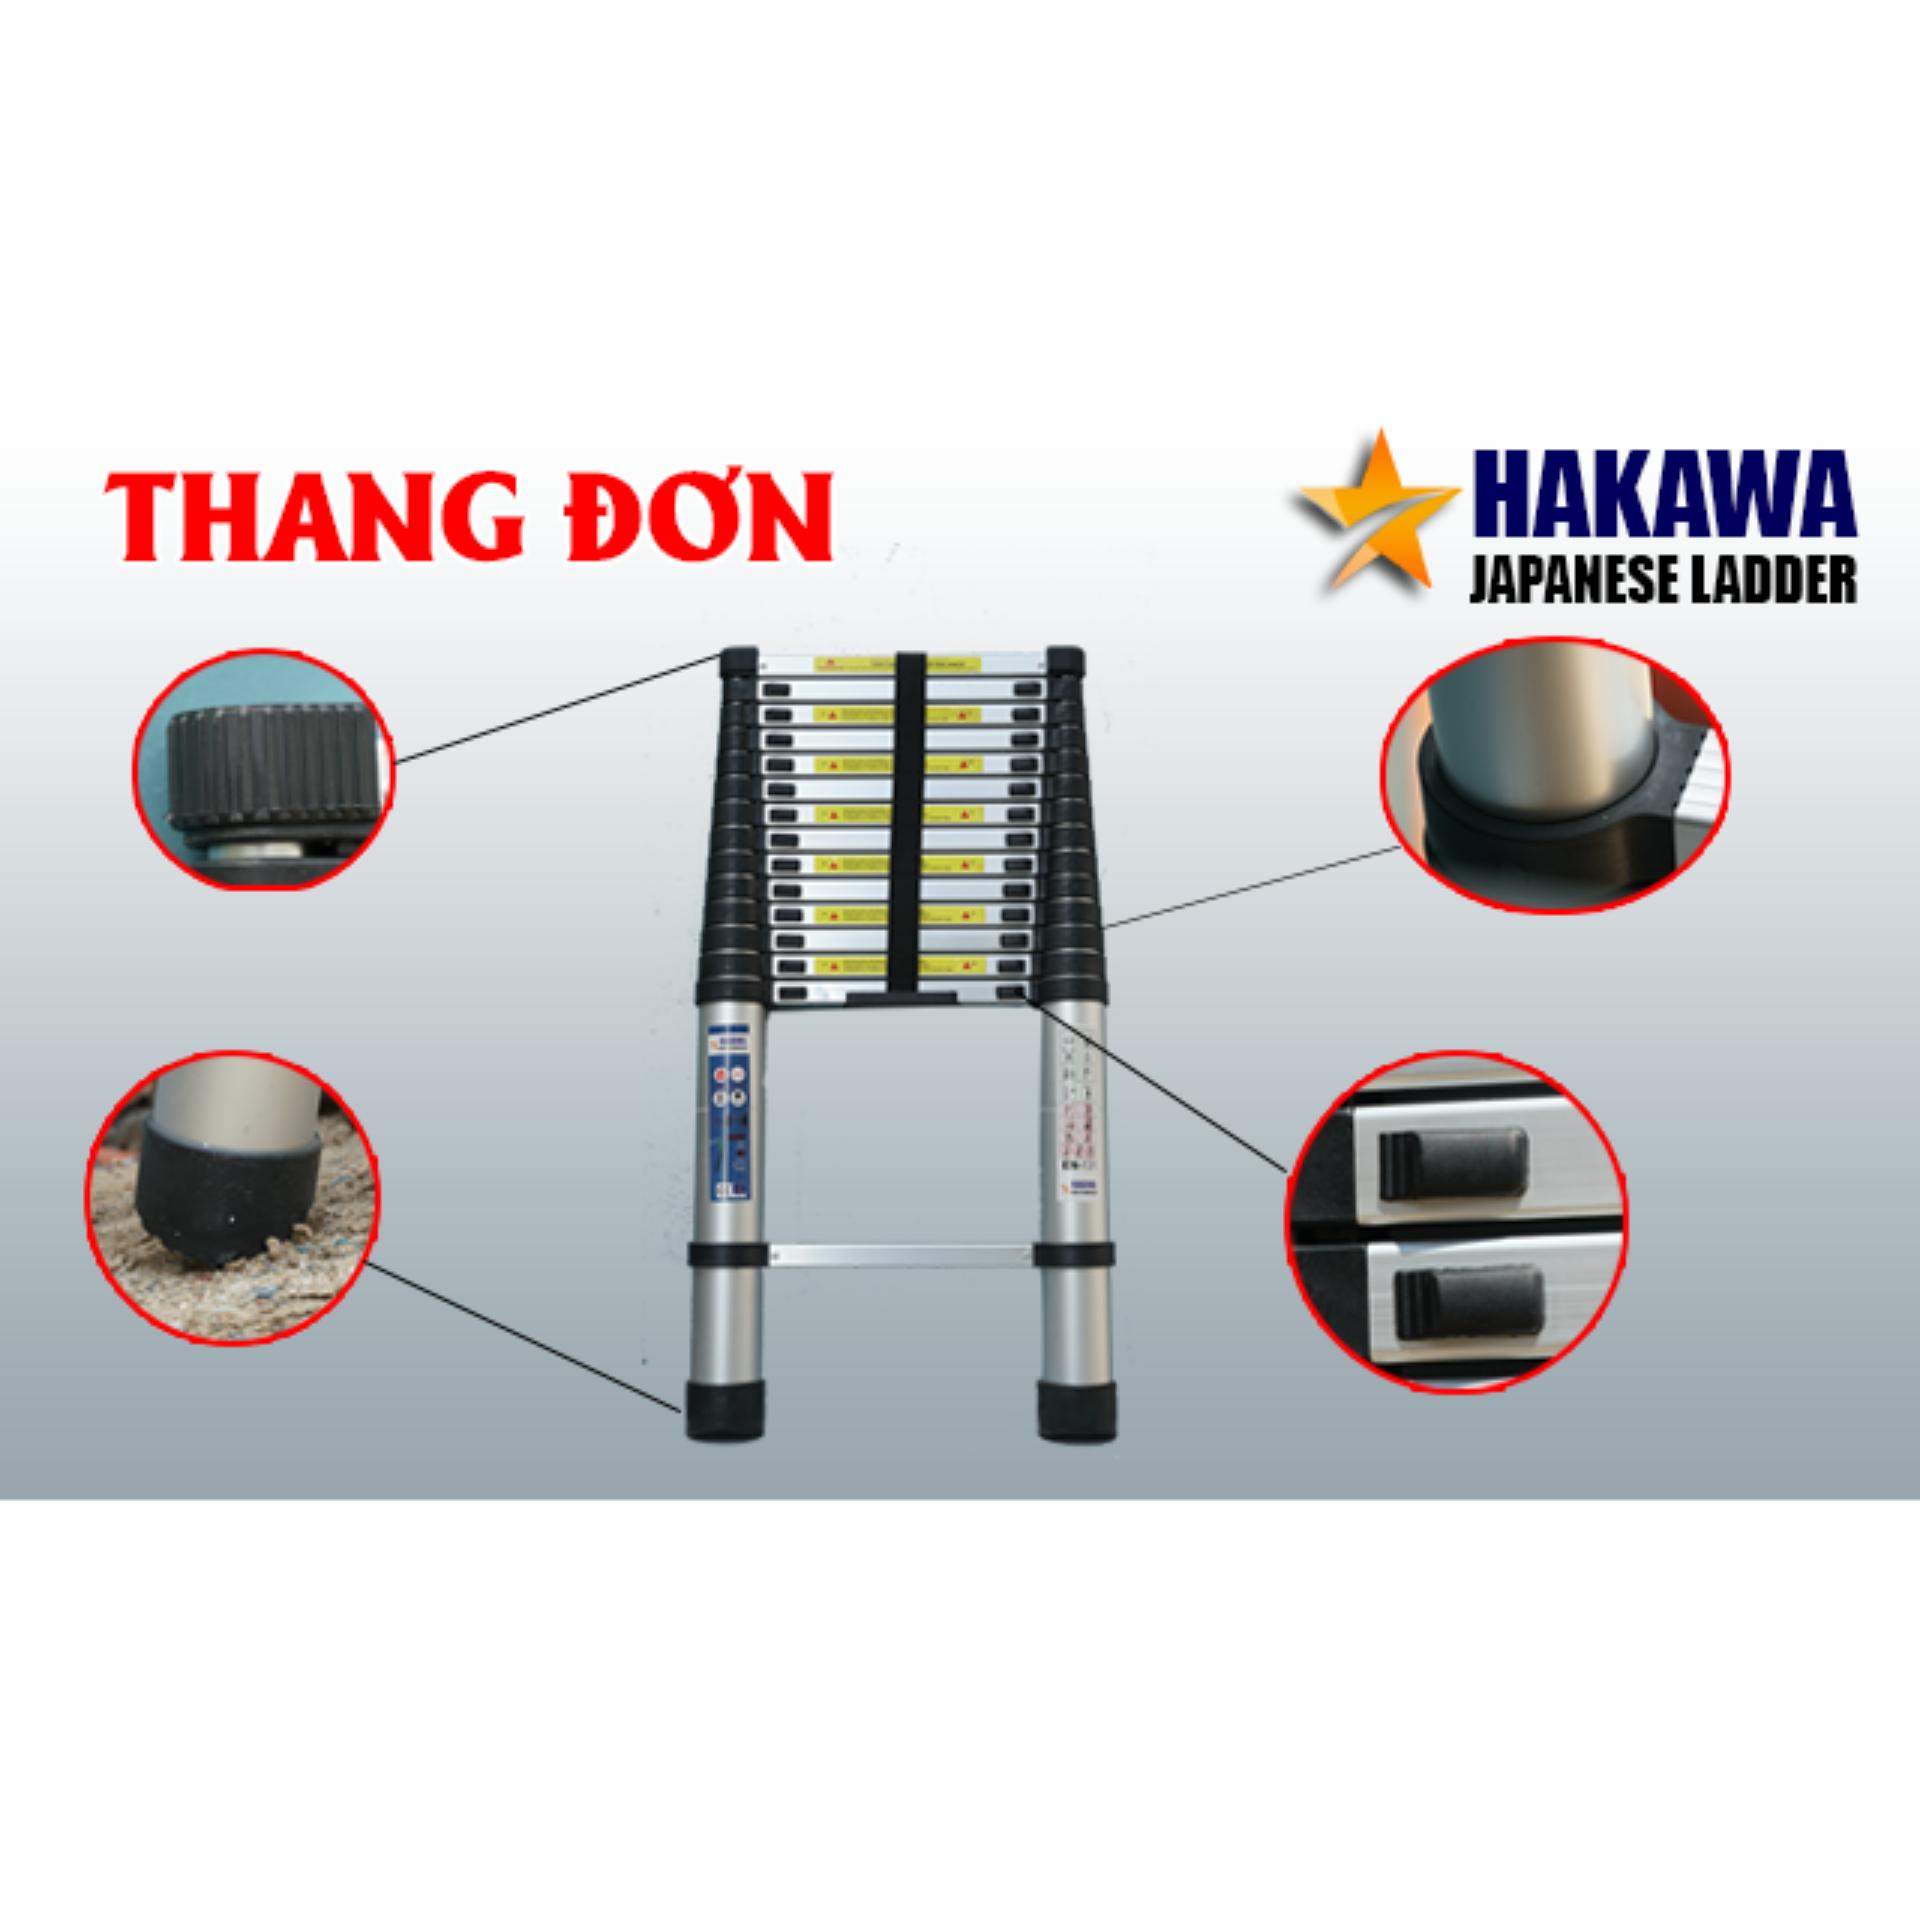 [HAKAWA] Thang nhom rut don HAKAWA HK138 3m8 bằng nhôm không rỉ, chịu lực tốt